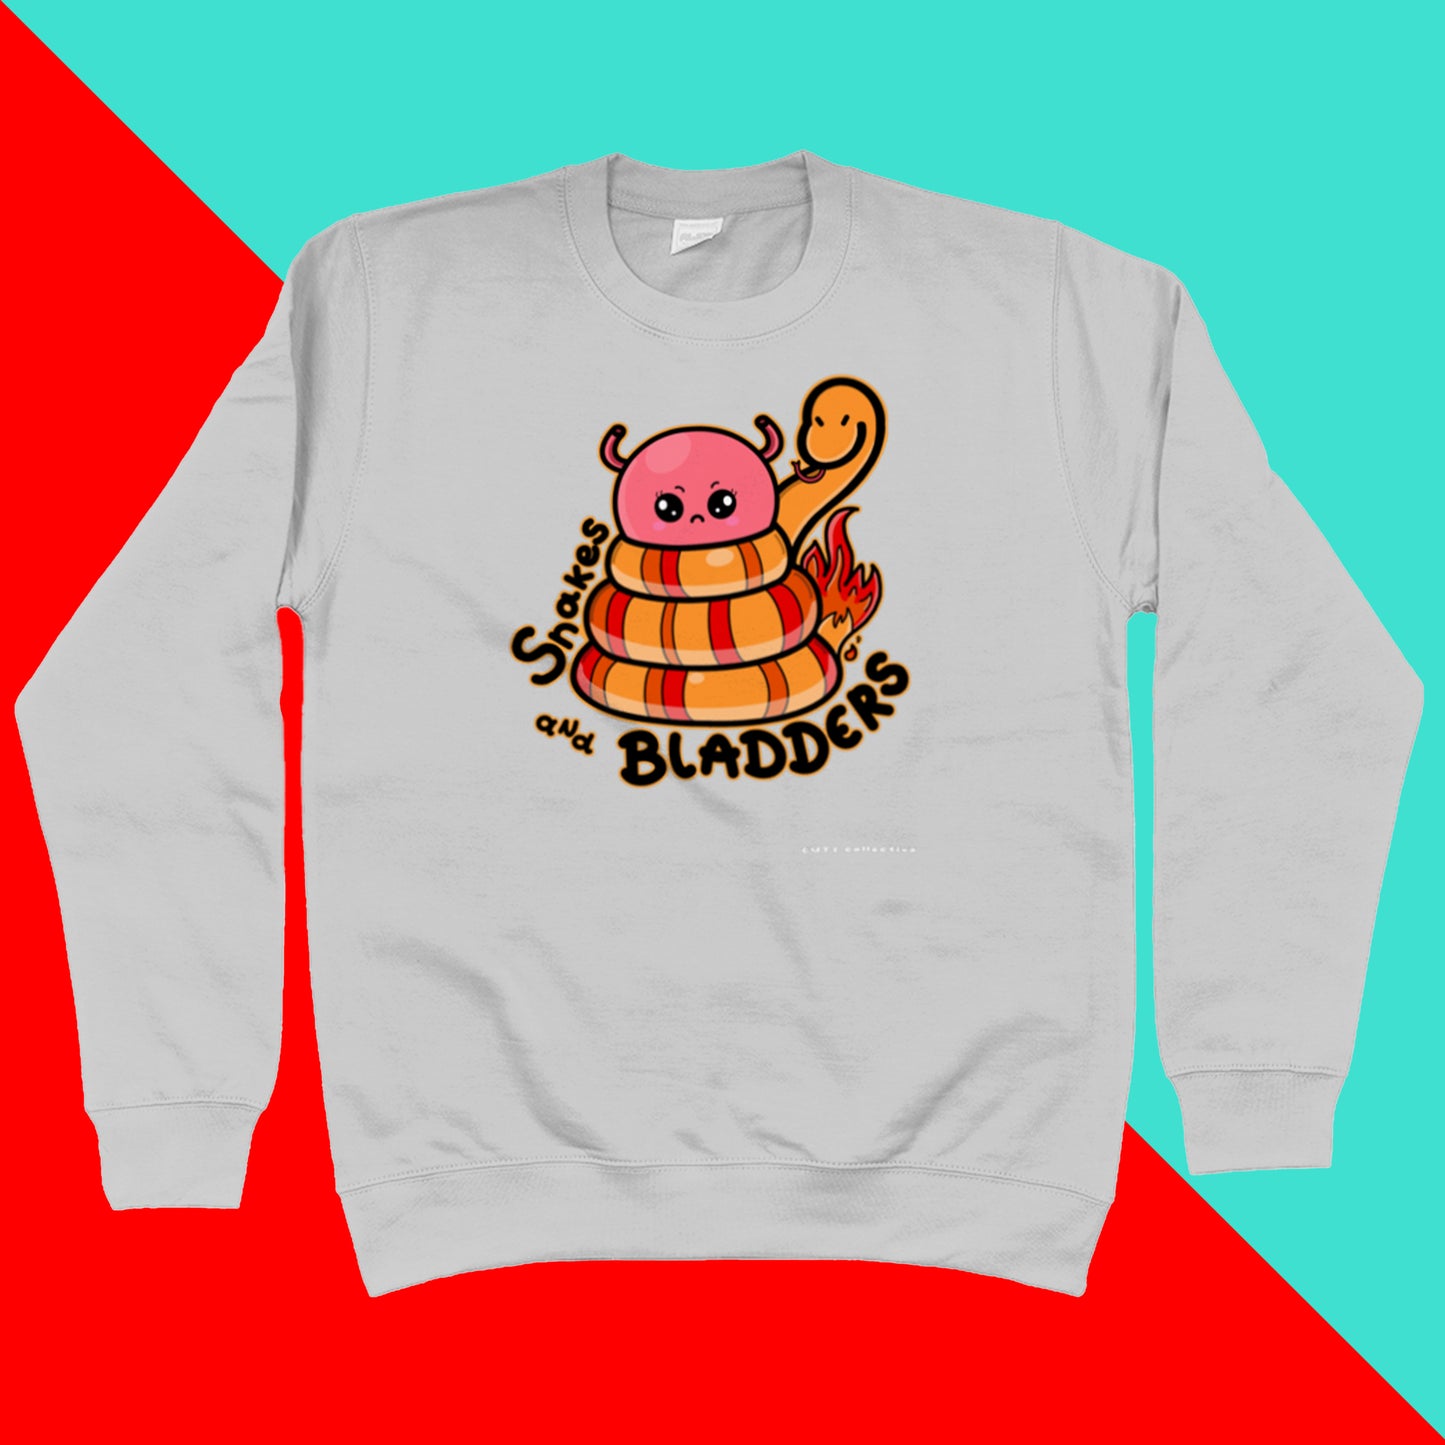 Snakes & Bladders Sweatshirt